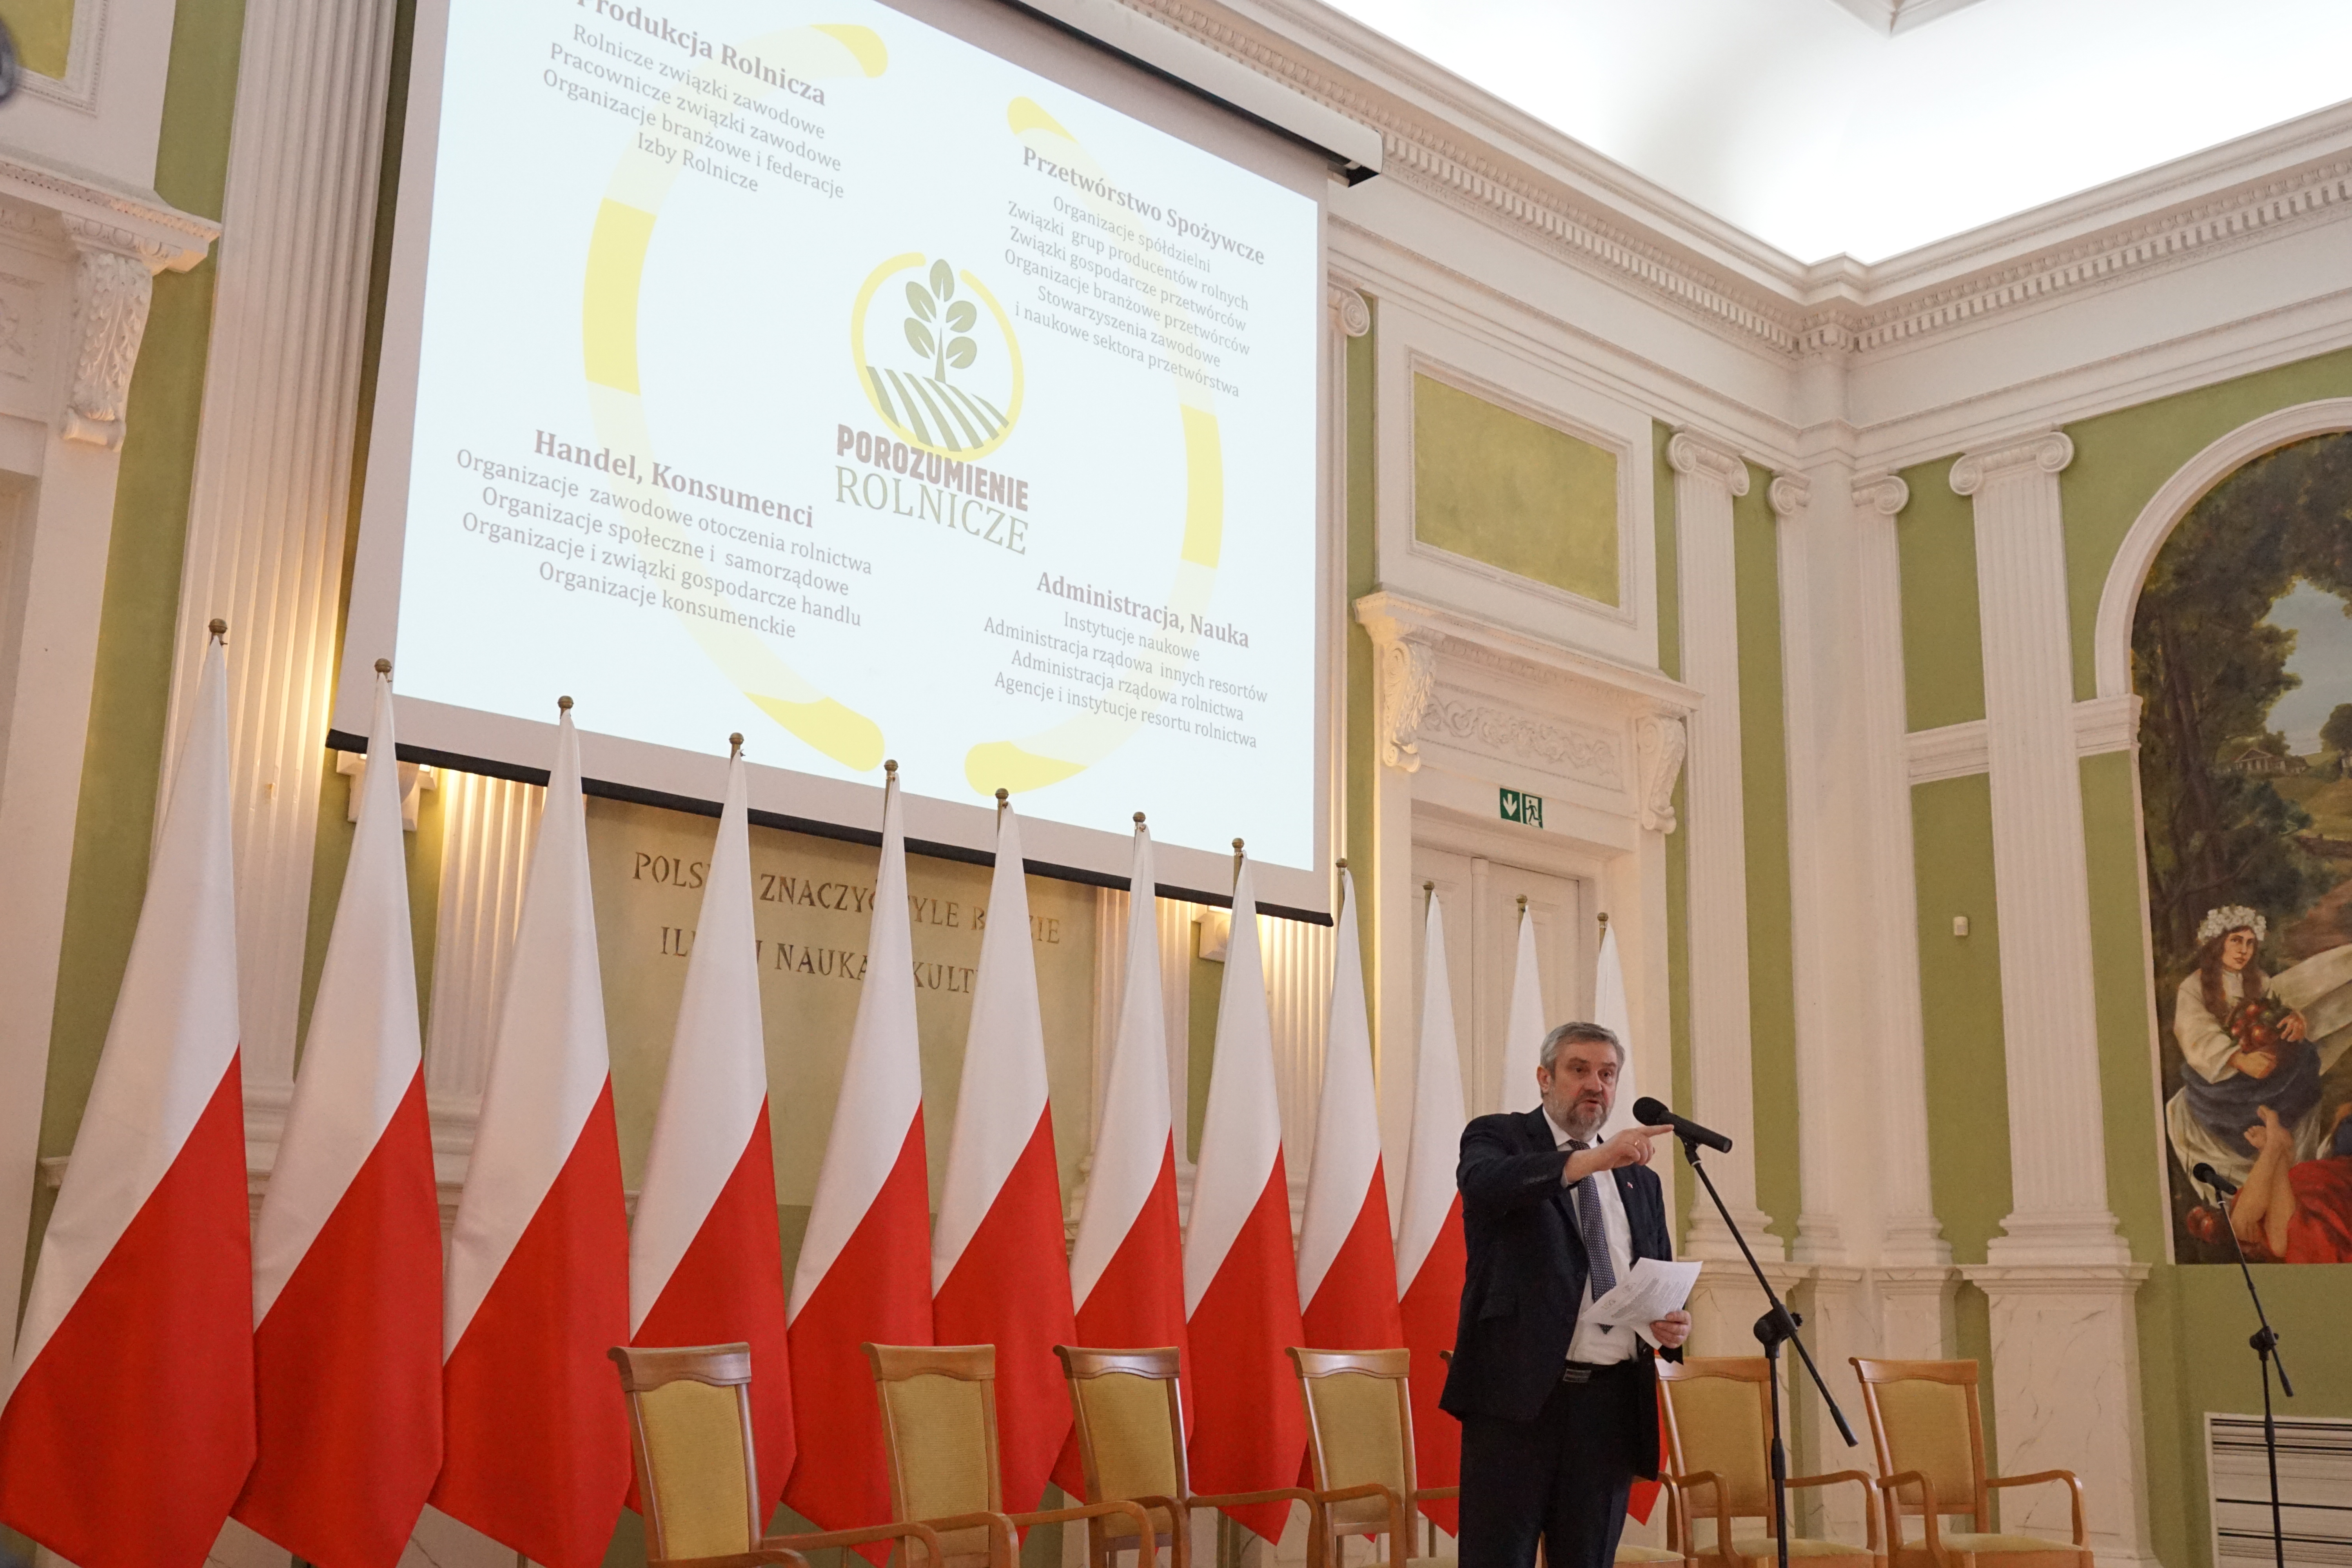 Minister J.K. Ardanowski mówi o czterech elementach Porozumienia Rolniczego